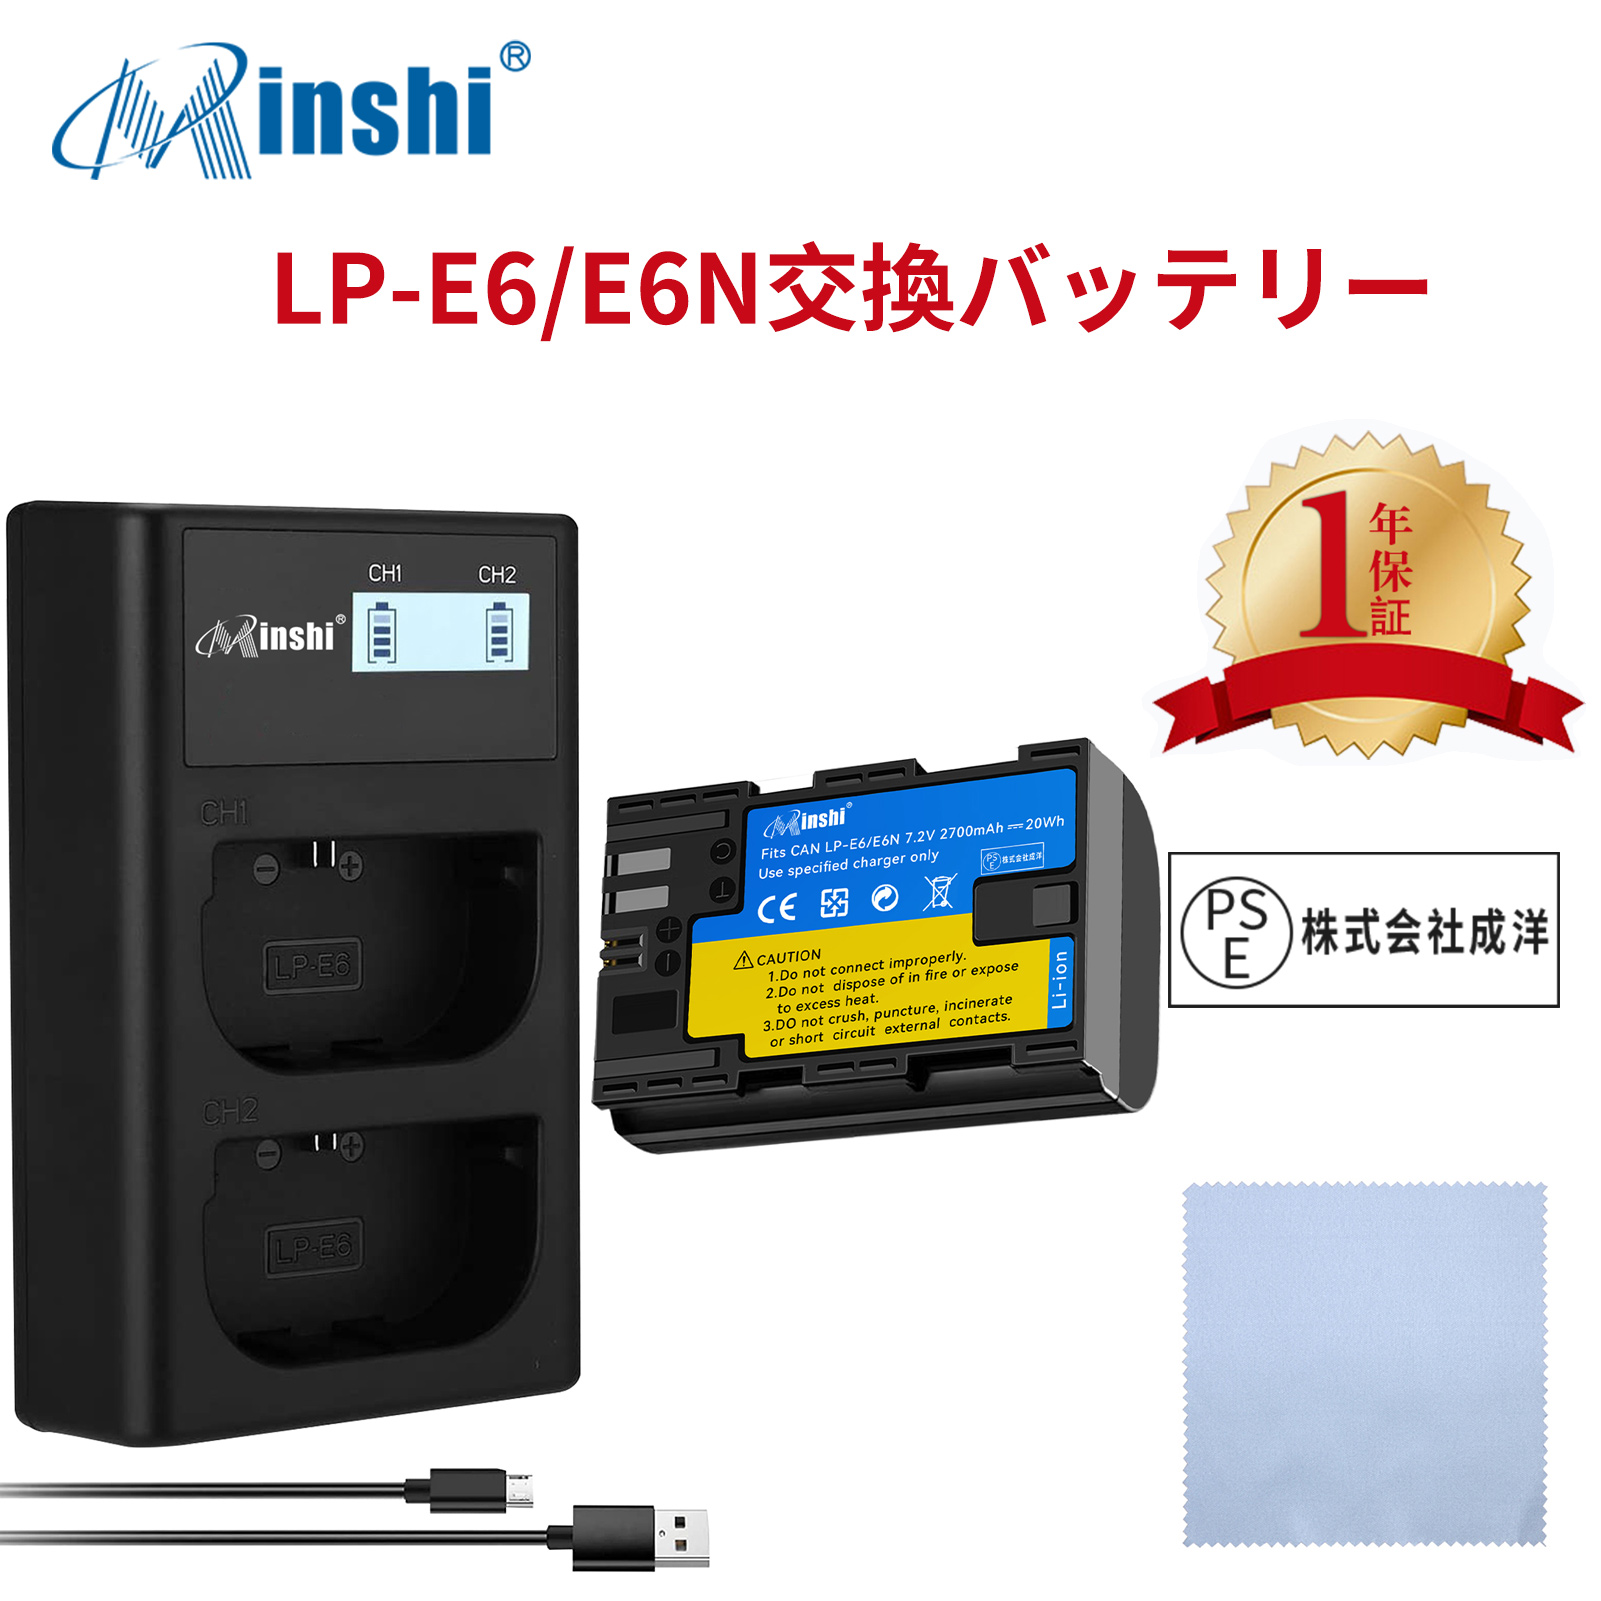 【セット】minshi Canon  EOS 60D LP-E6 LP-E6N EOS6D CANON 80D 【2700mAh 7.2V】高品質 LP-E6NH 交換用バッテリー